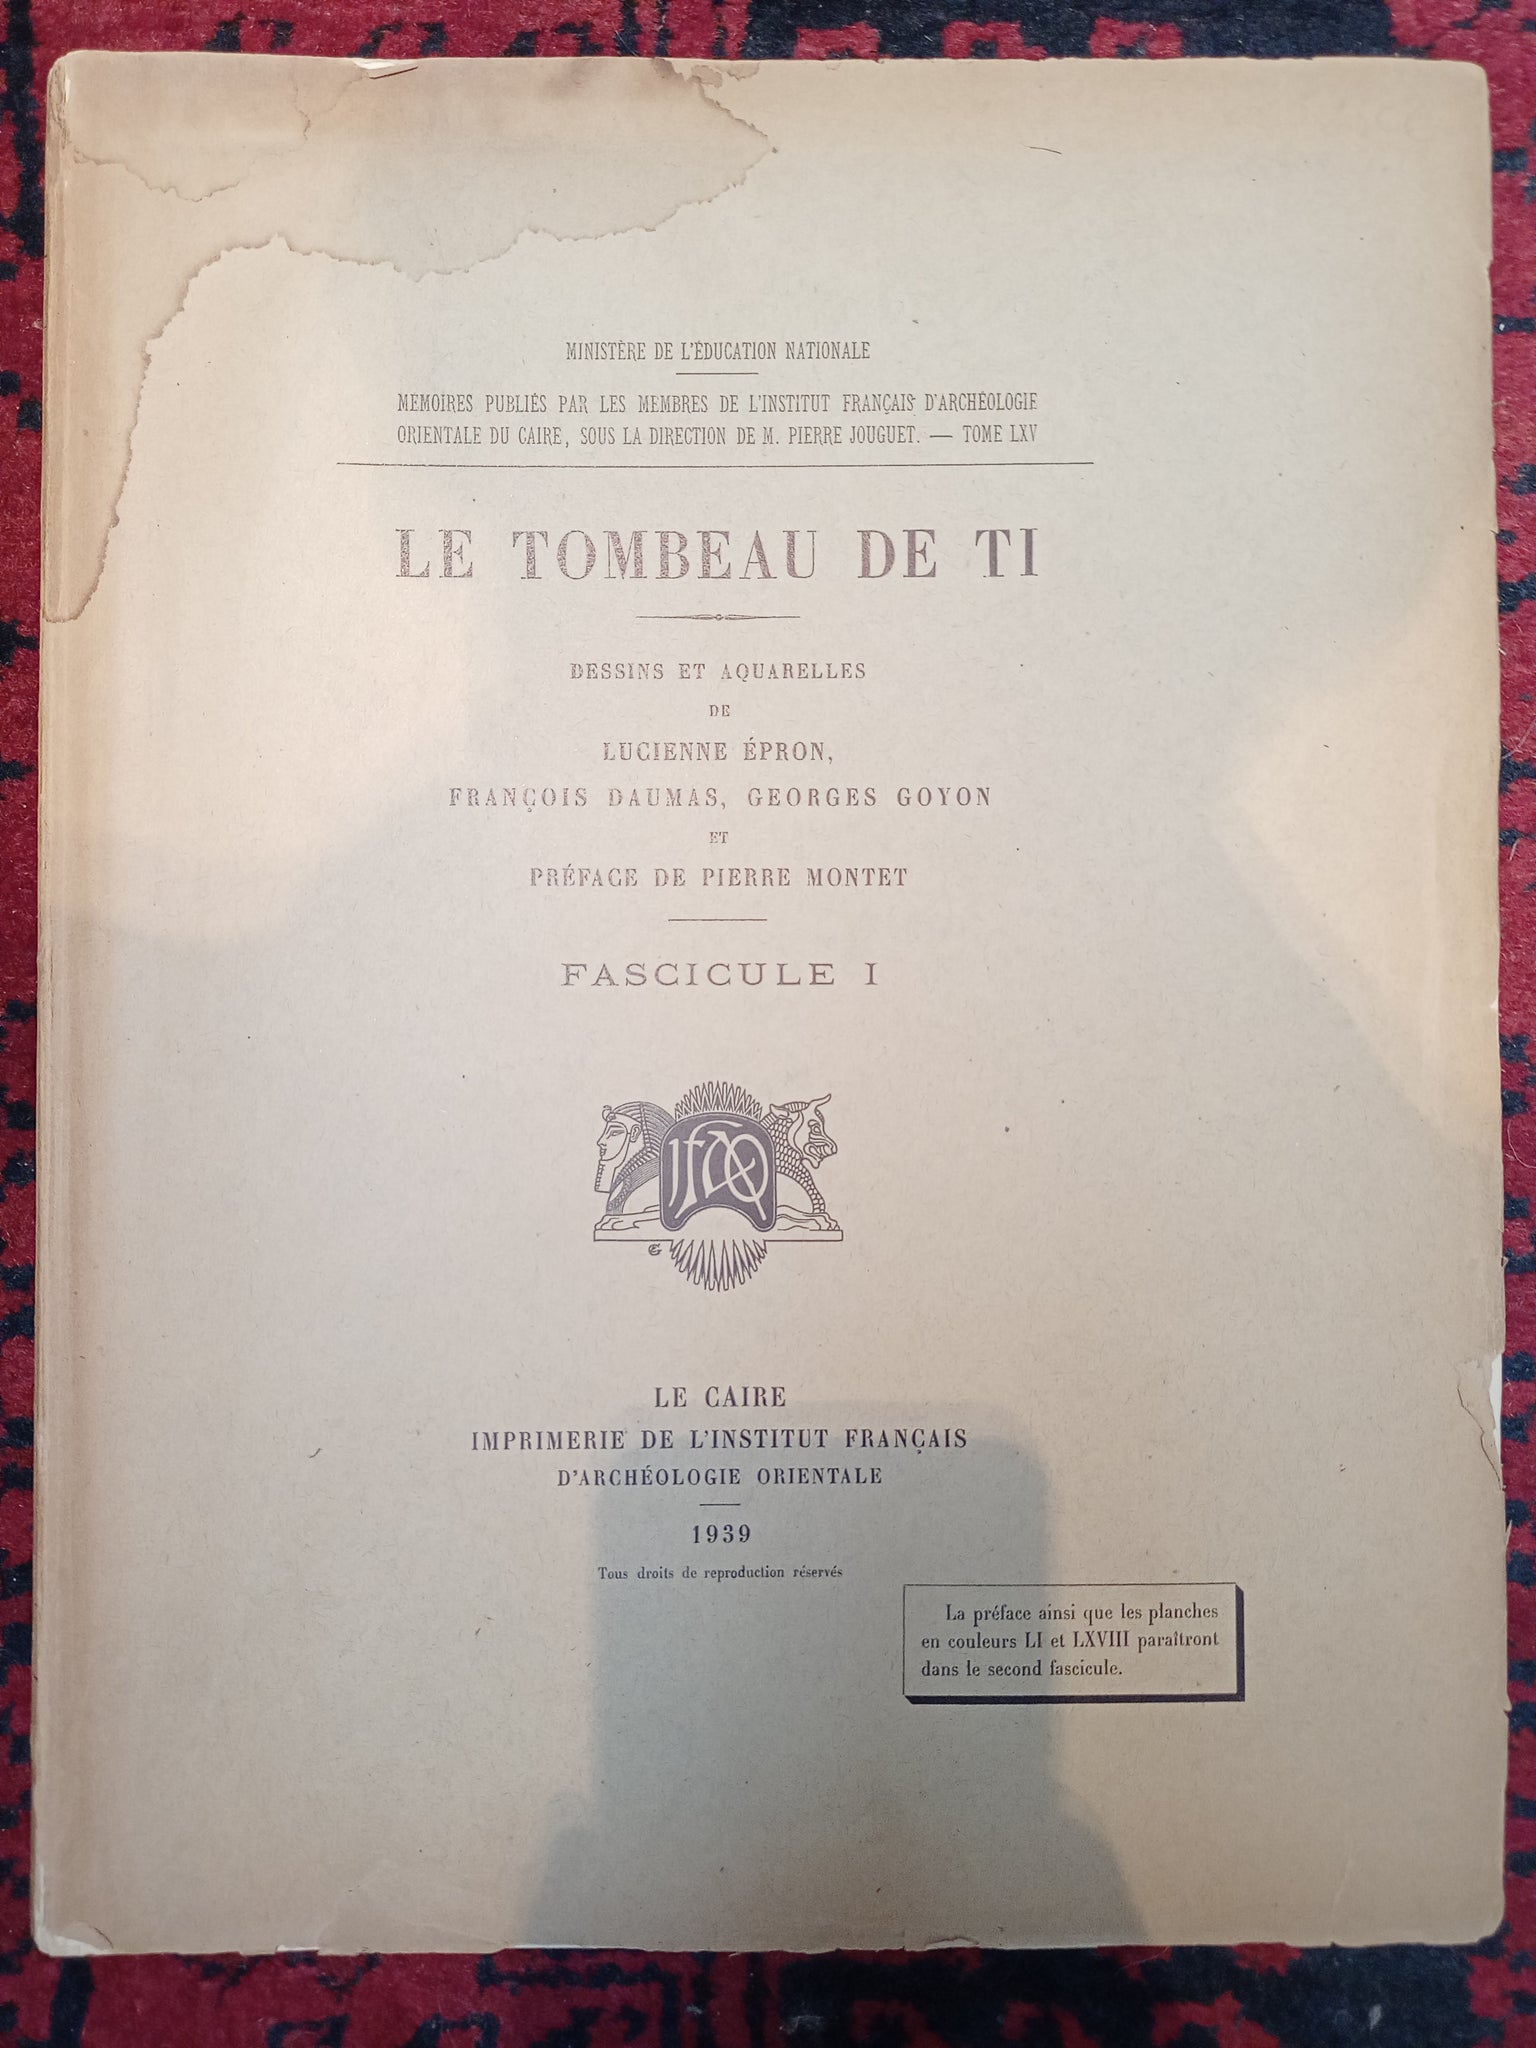 Mémoires publiés par les membres de l'Institut Français d'Archéologie Orientale du Caire, tome LXV, le tombeau de Ti, fasicule 1.